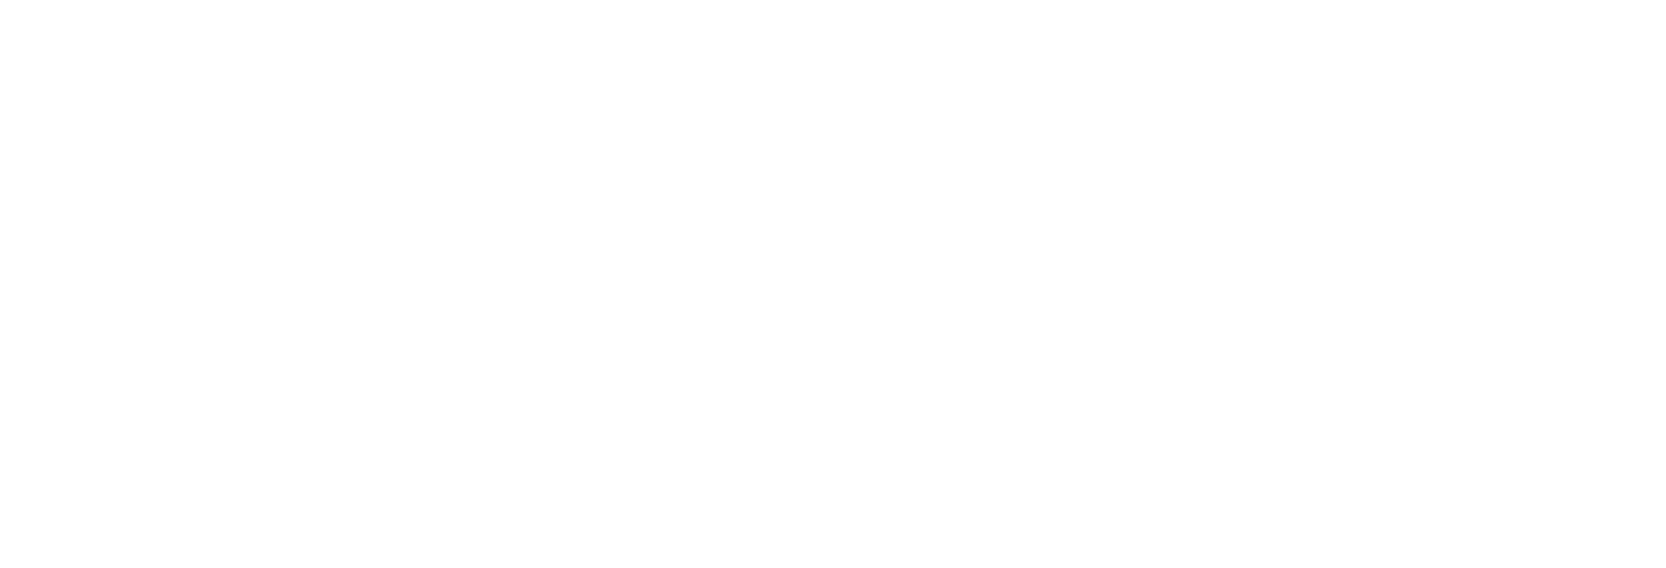 Kibou-ken’s Commitment